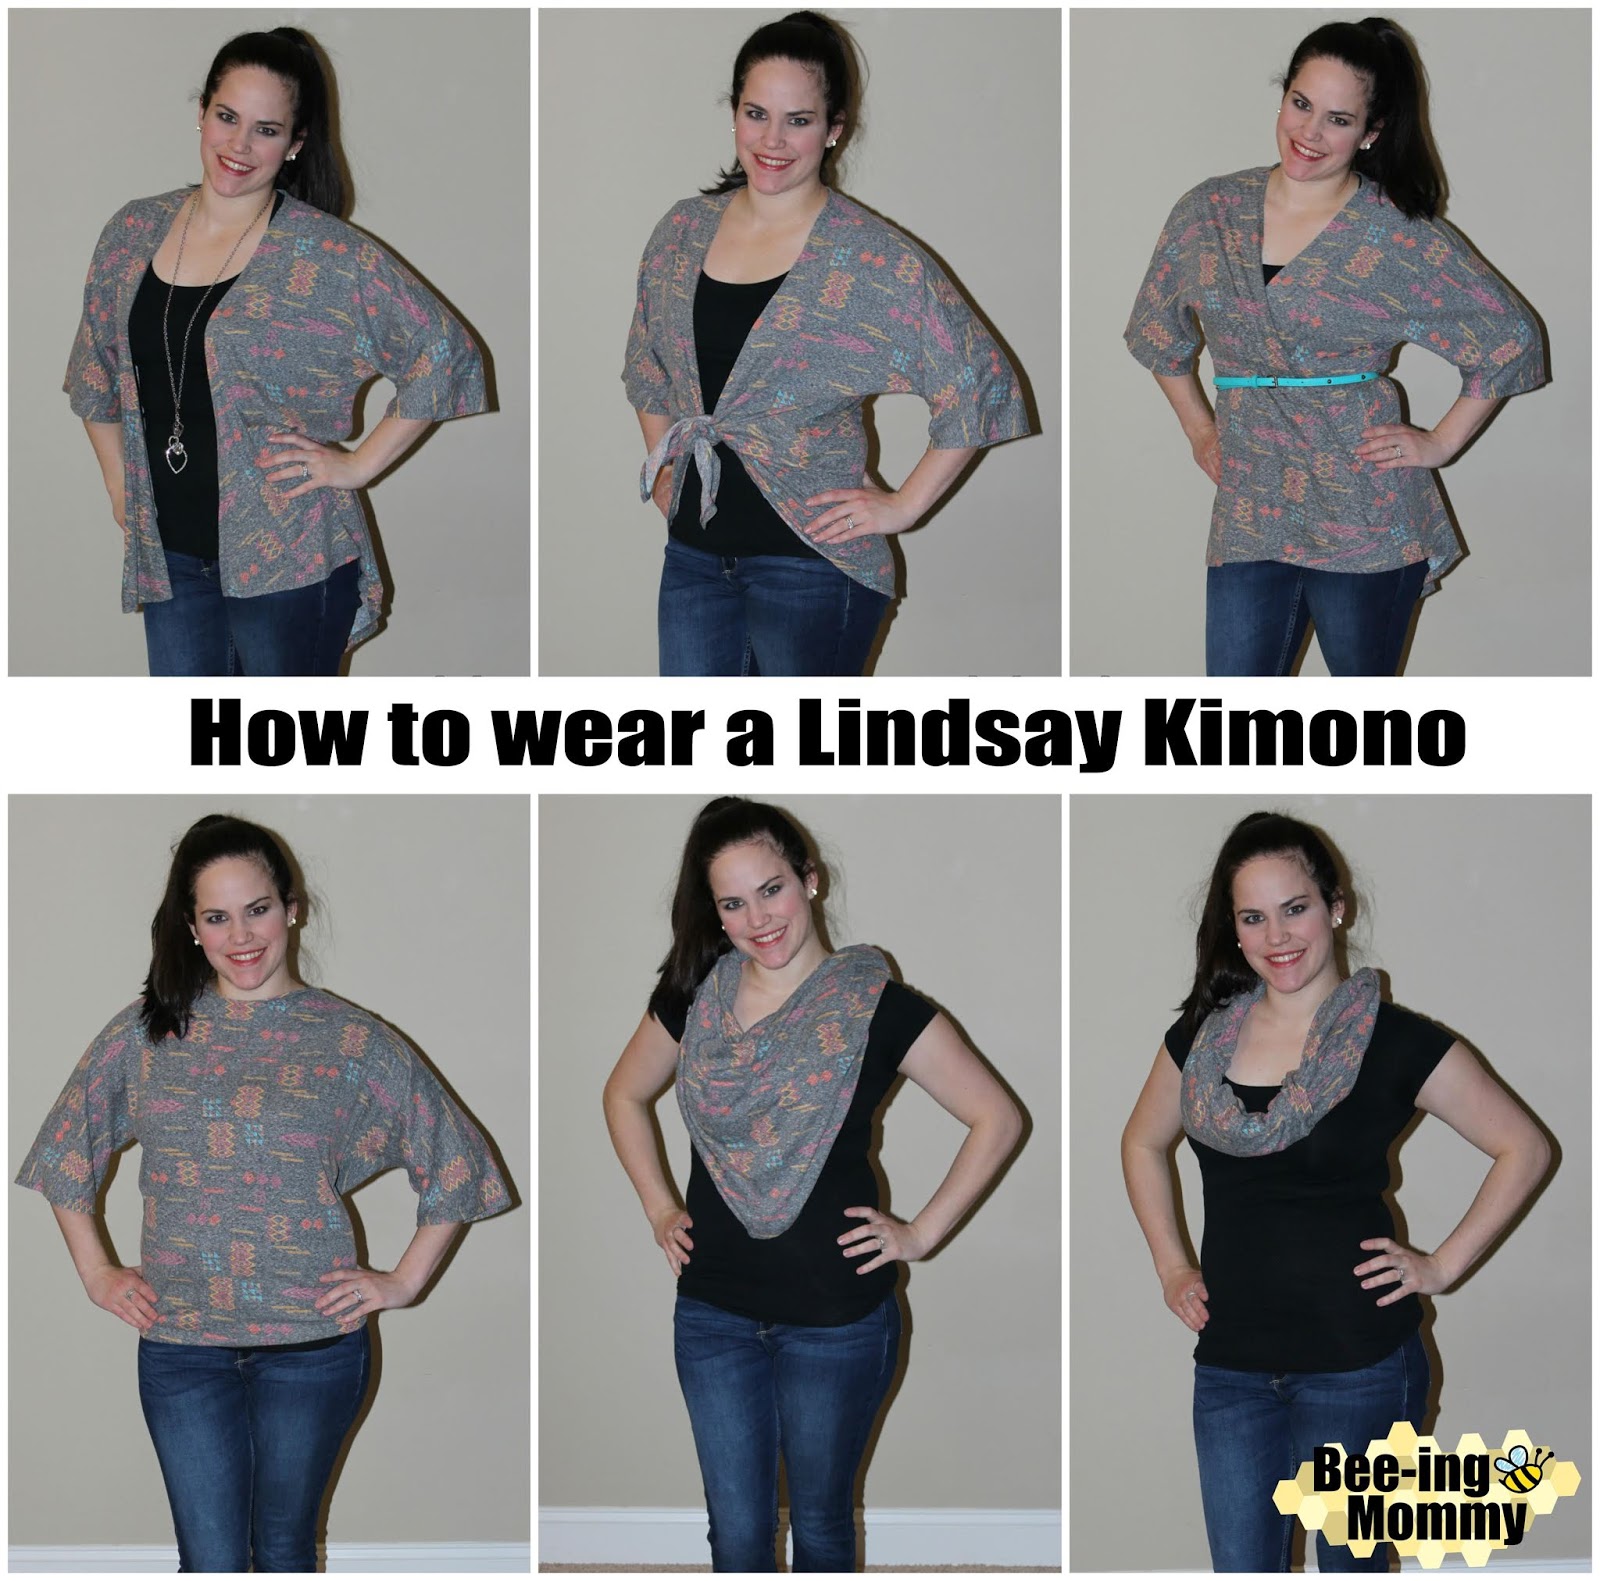 Lindsay Size Chart Lularoe